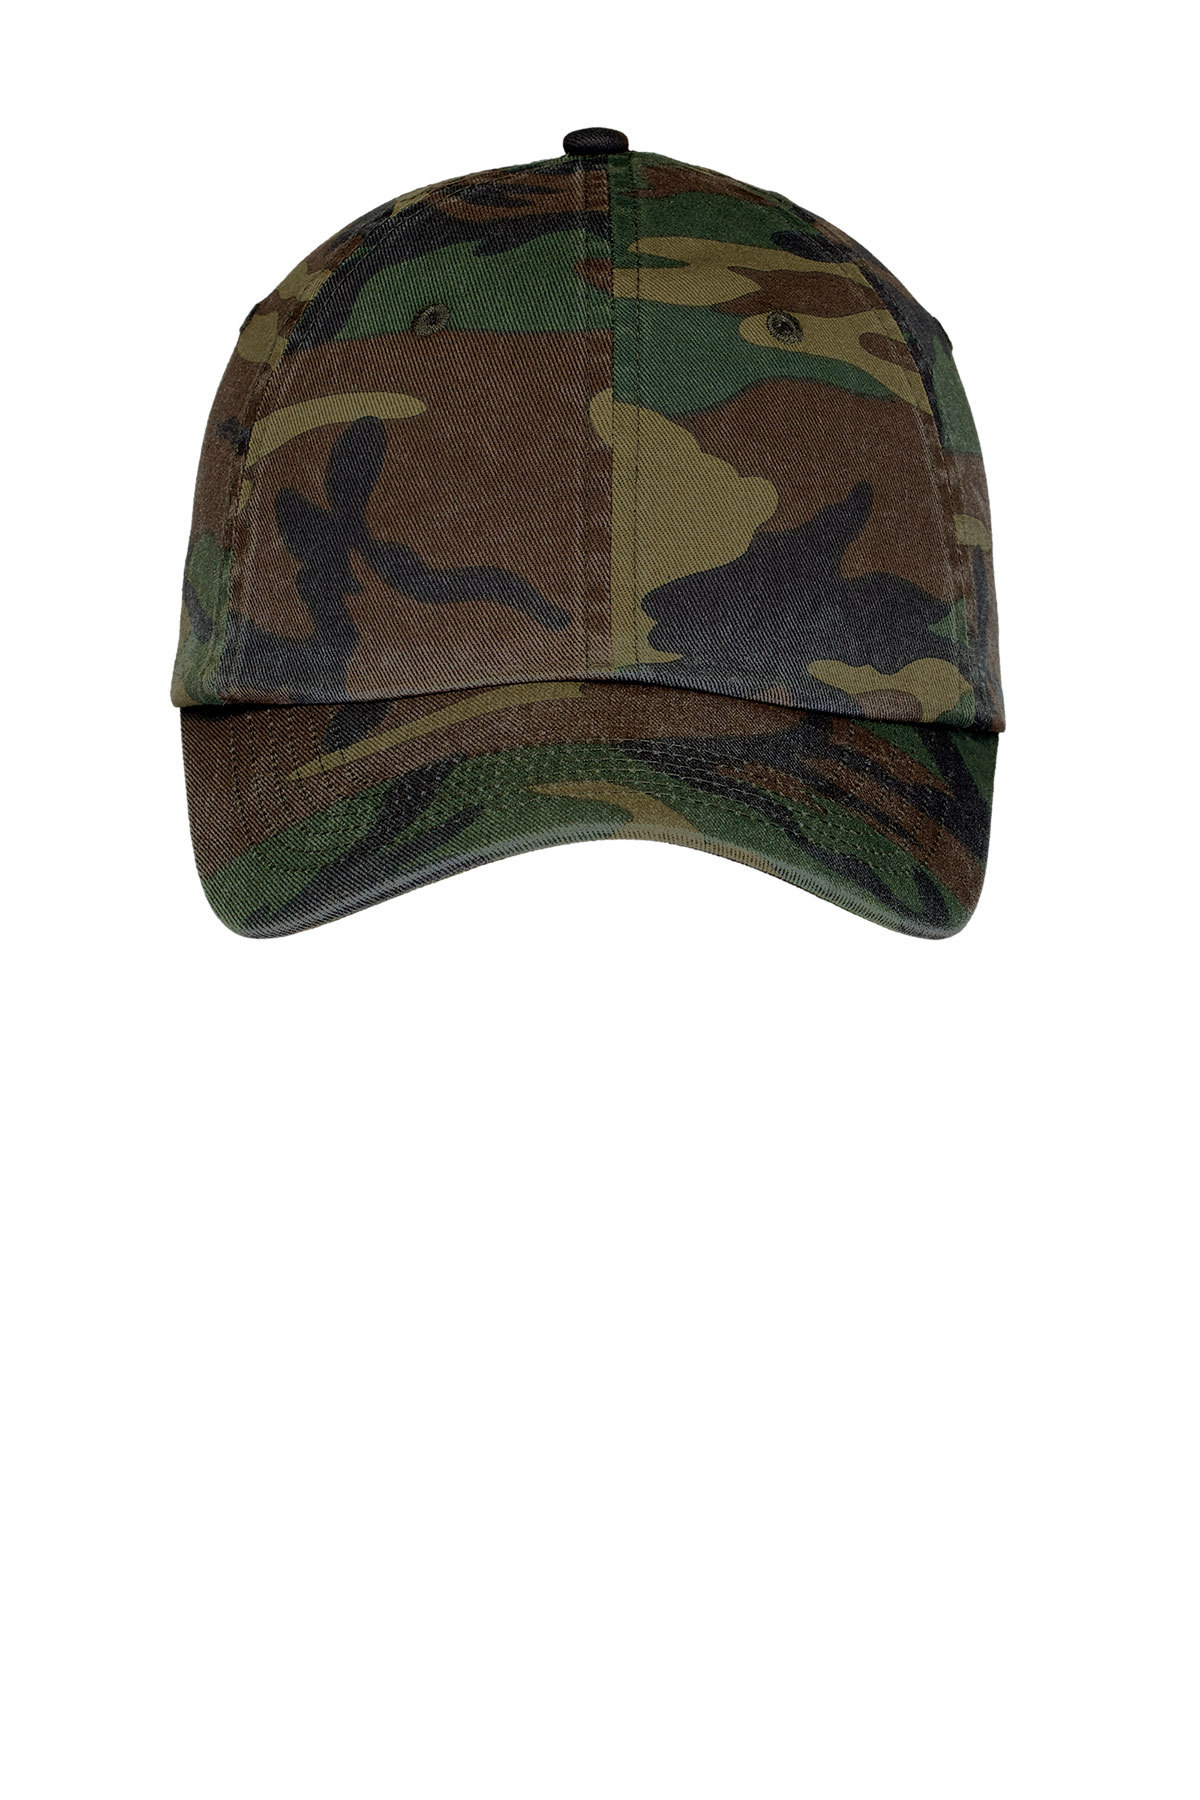 New Comoflage Hat Cap Adjustable Military Desert Navy Winter Pink Orange Camo 